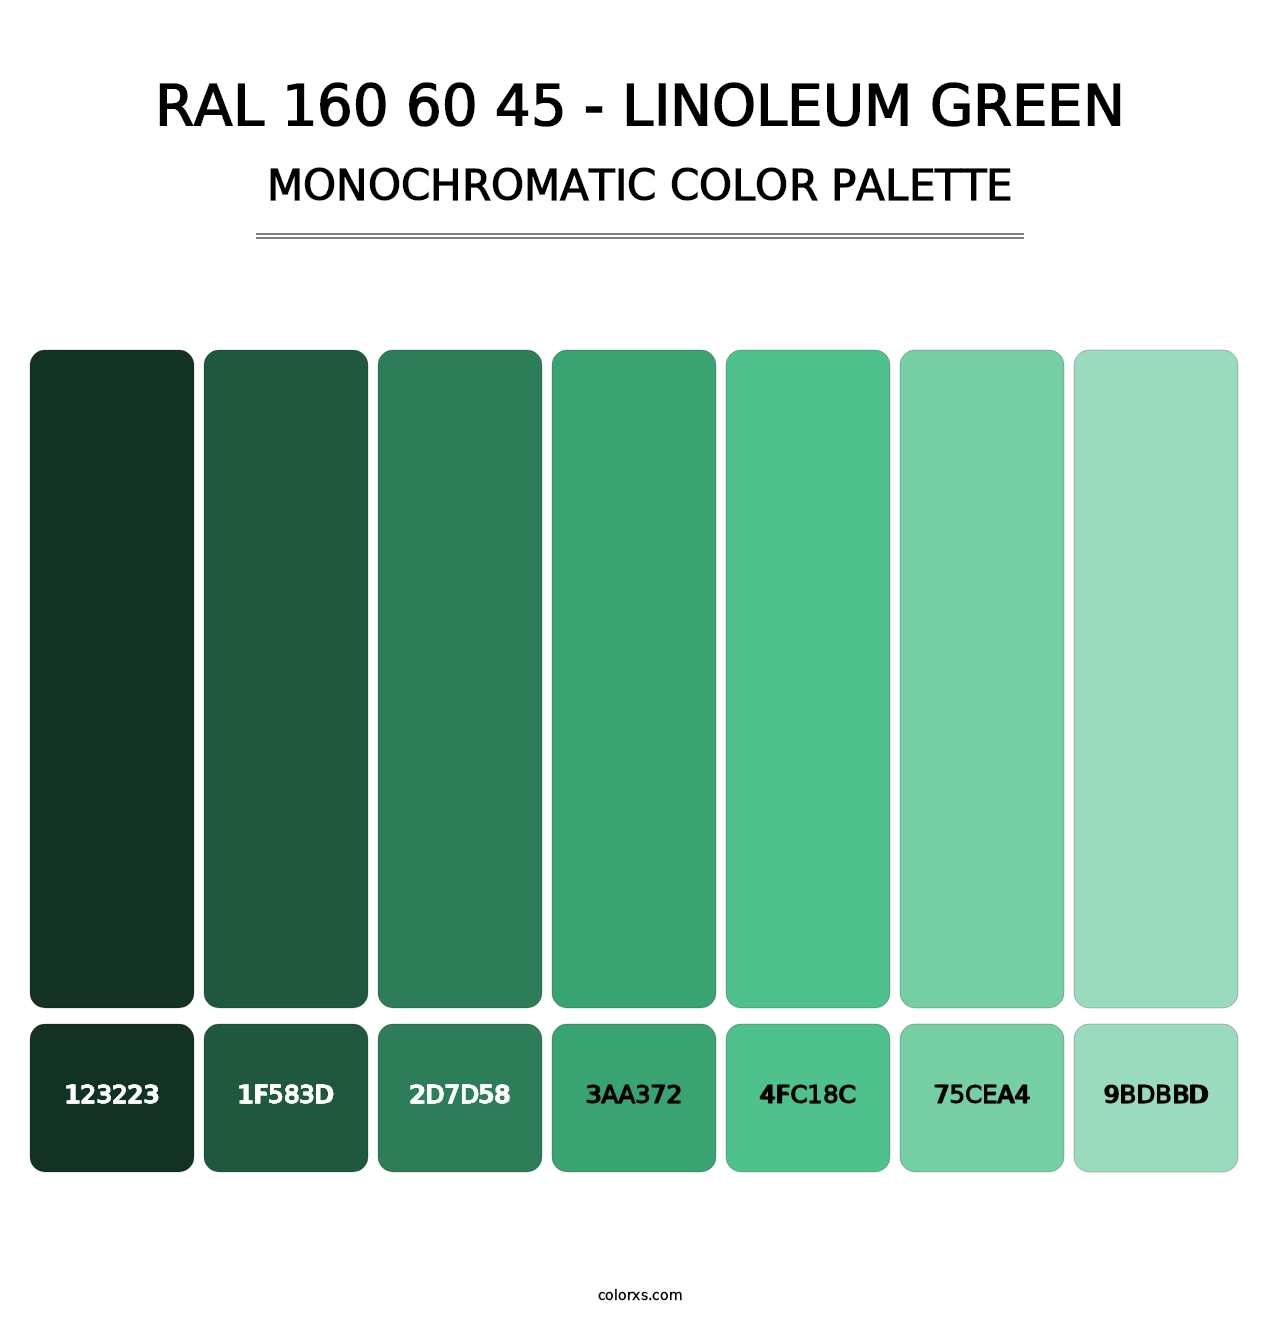 RAL 160 60 45 - Linoleum Green - Monochromatic Color Palette